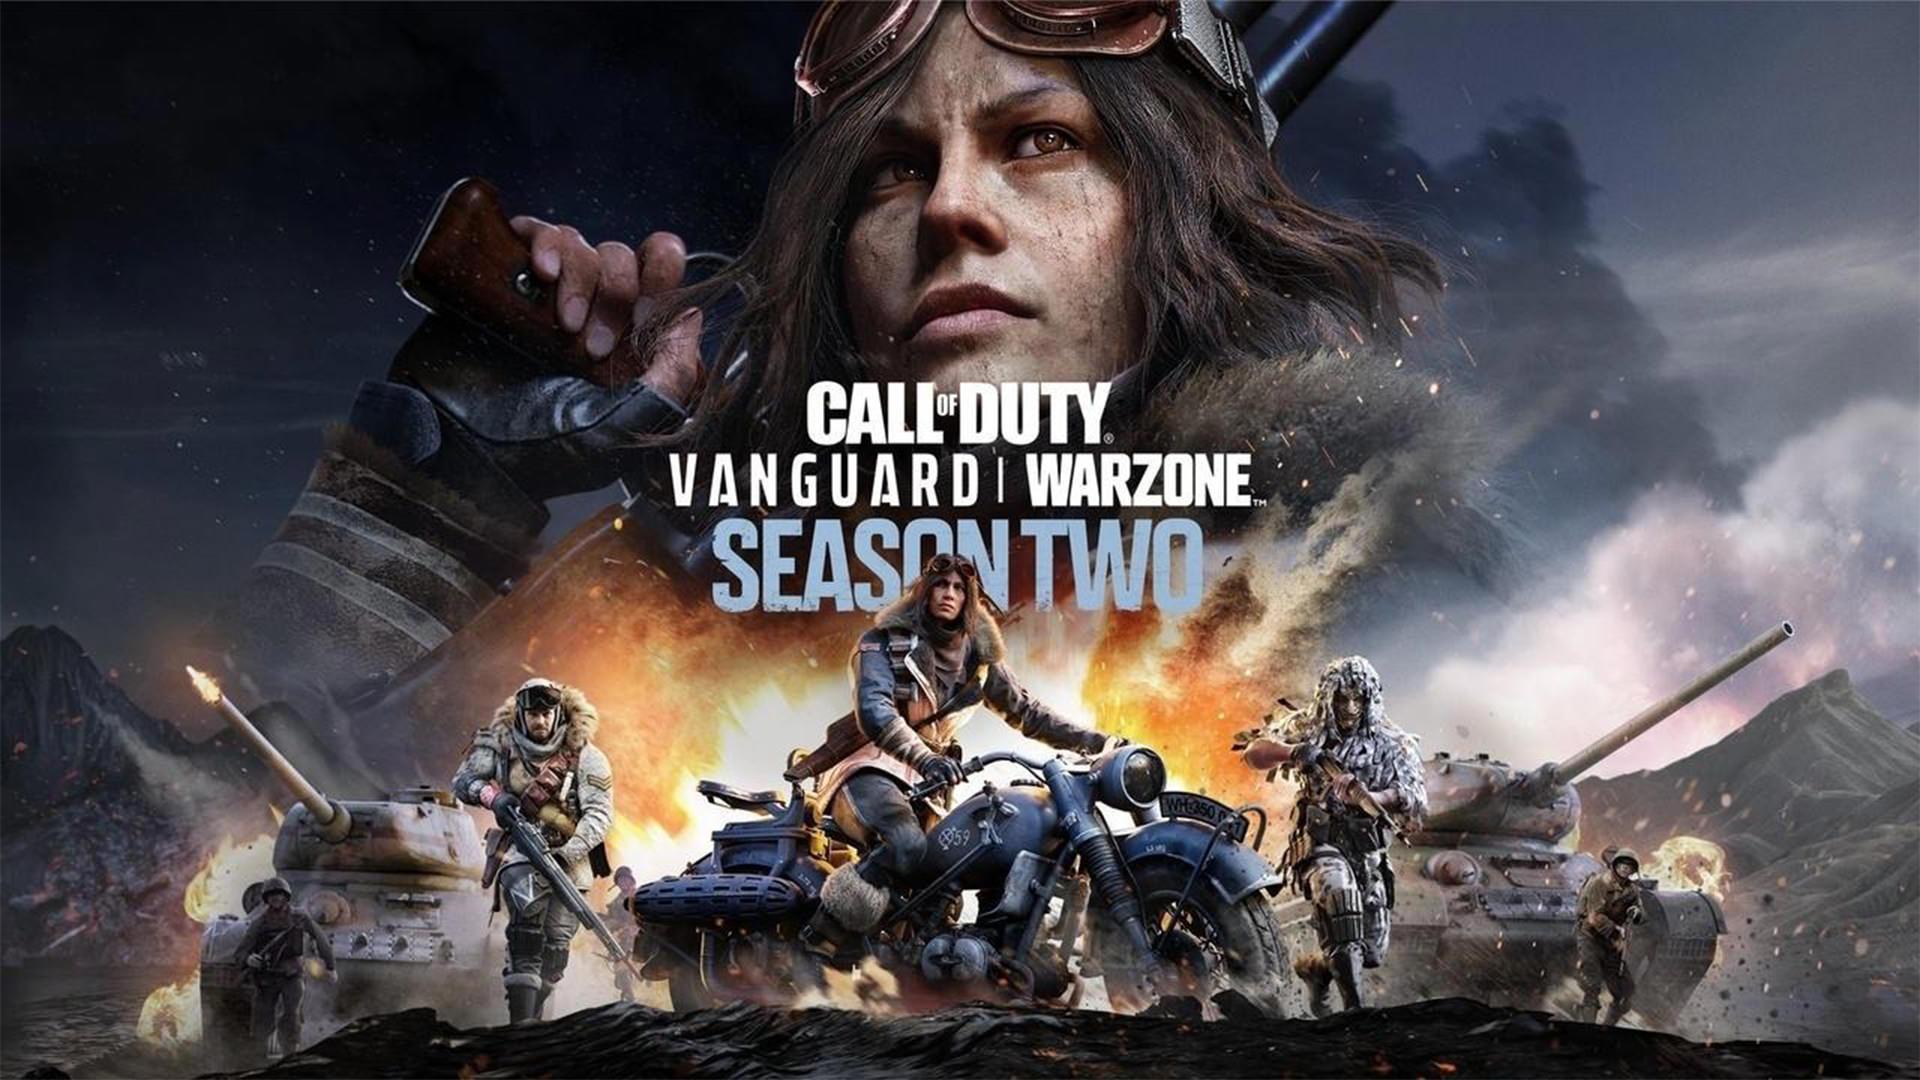 تریلر سینمایی فصل دوم Call of Duty: Vanguard و Warzone